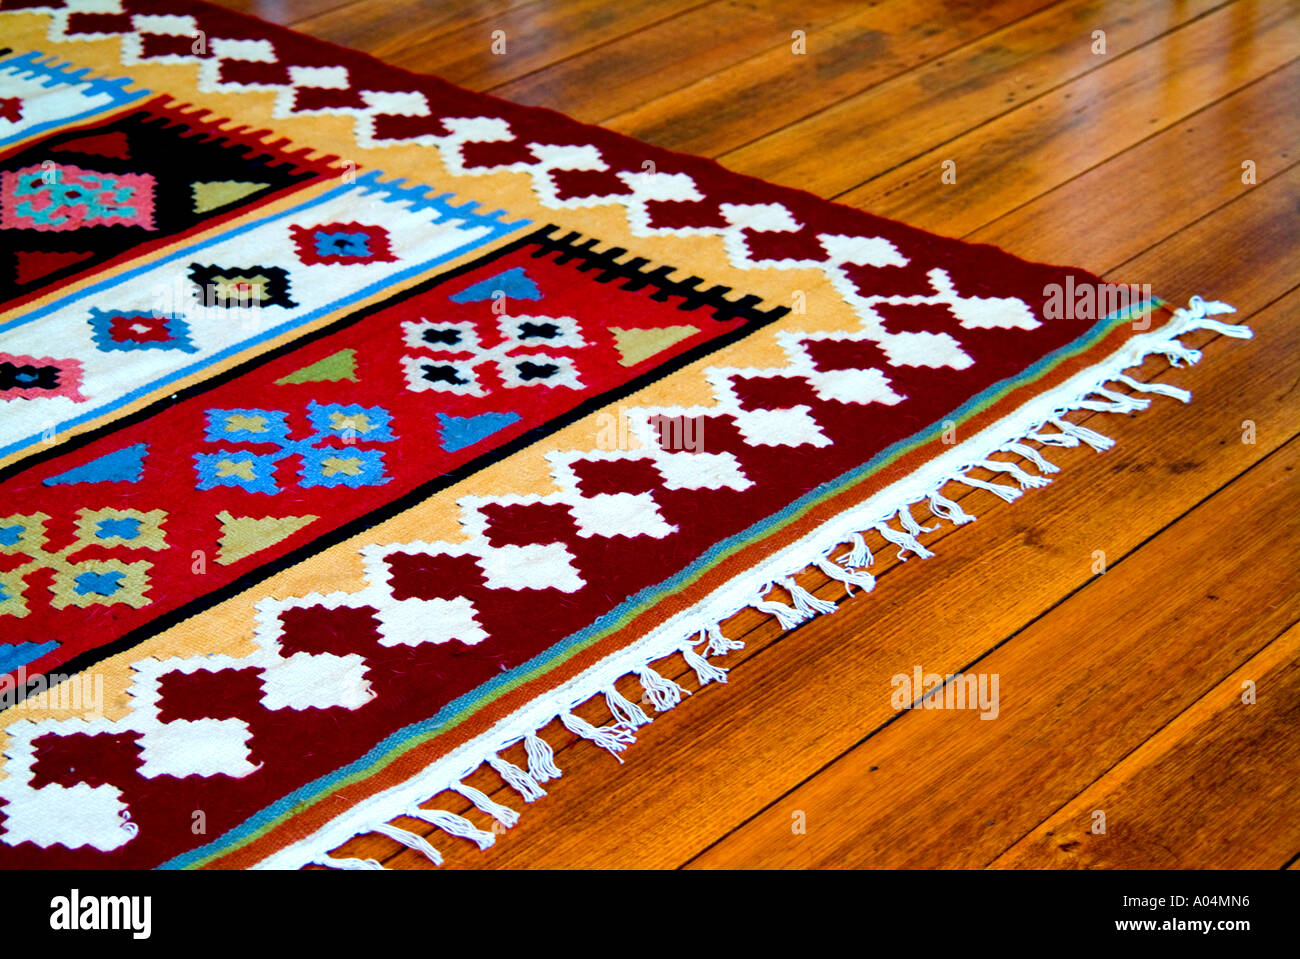 Bunter Kelim Teppich auf polierten Holzboden Stockfotografie - Alamy